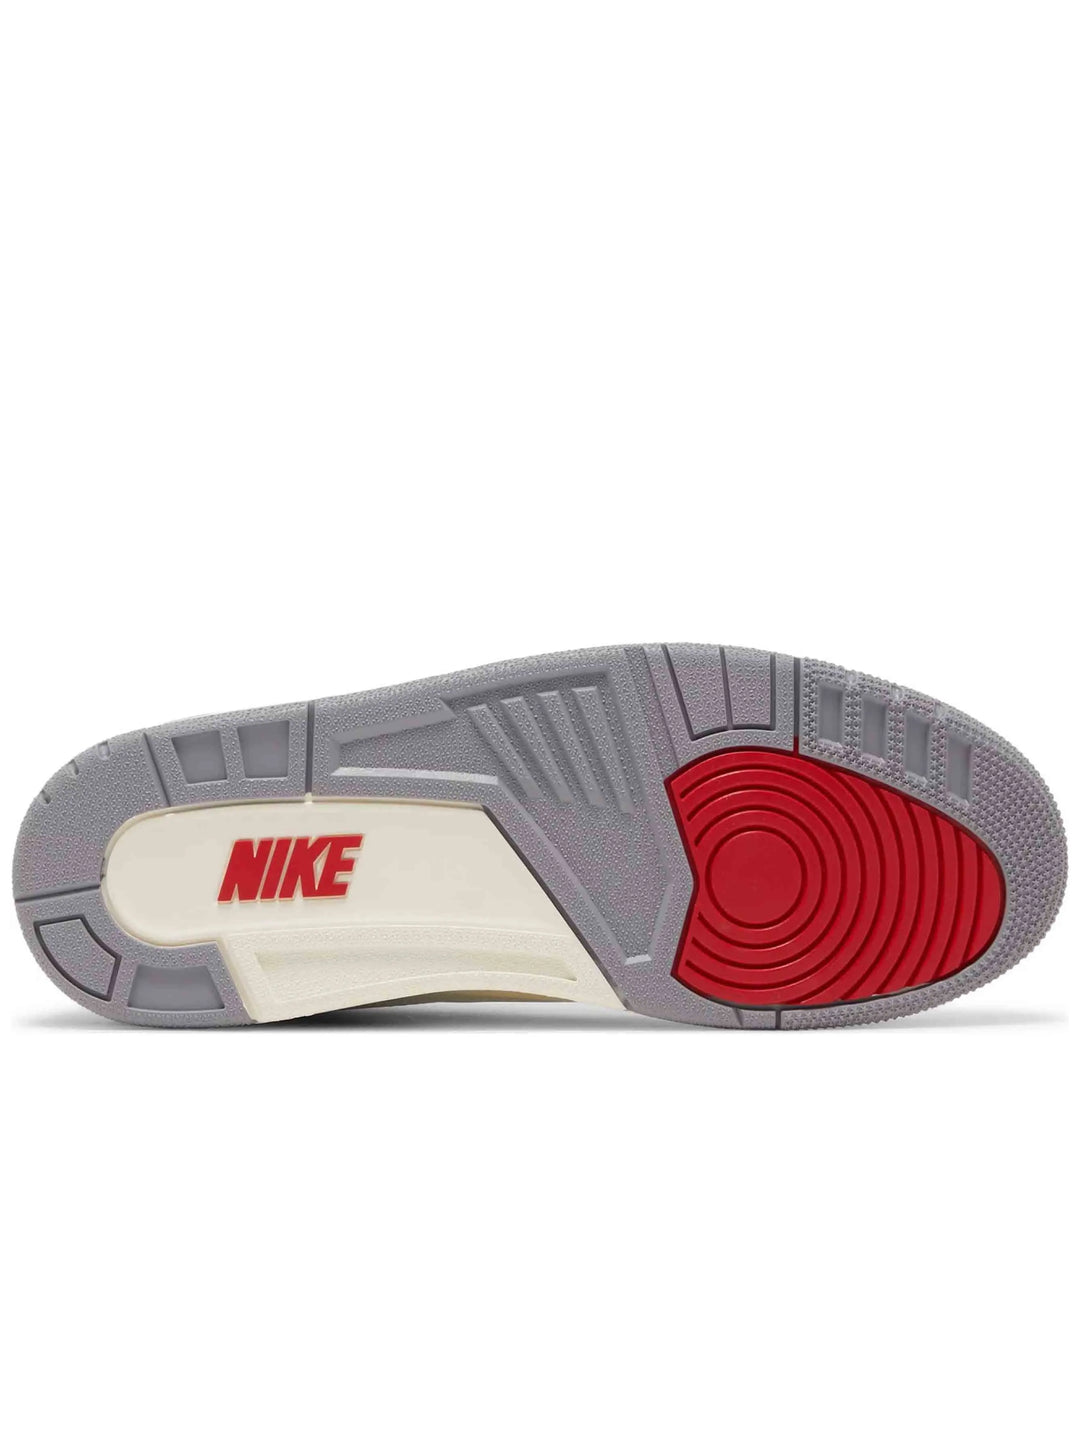 Nike Air Jordan 3 Retro White Cement Reimagined Prior